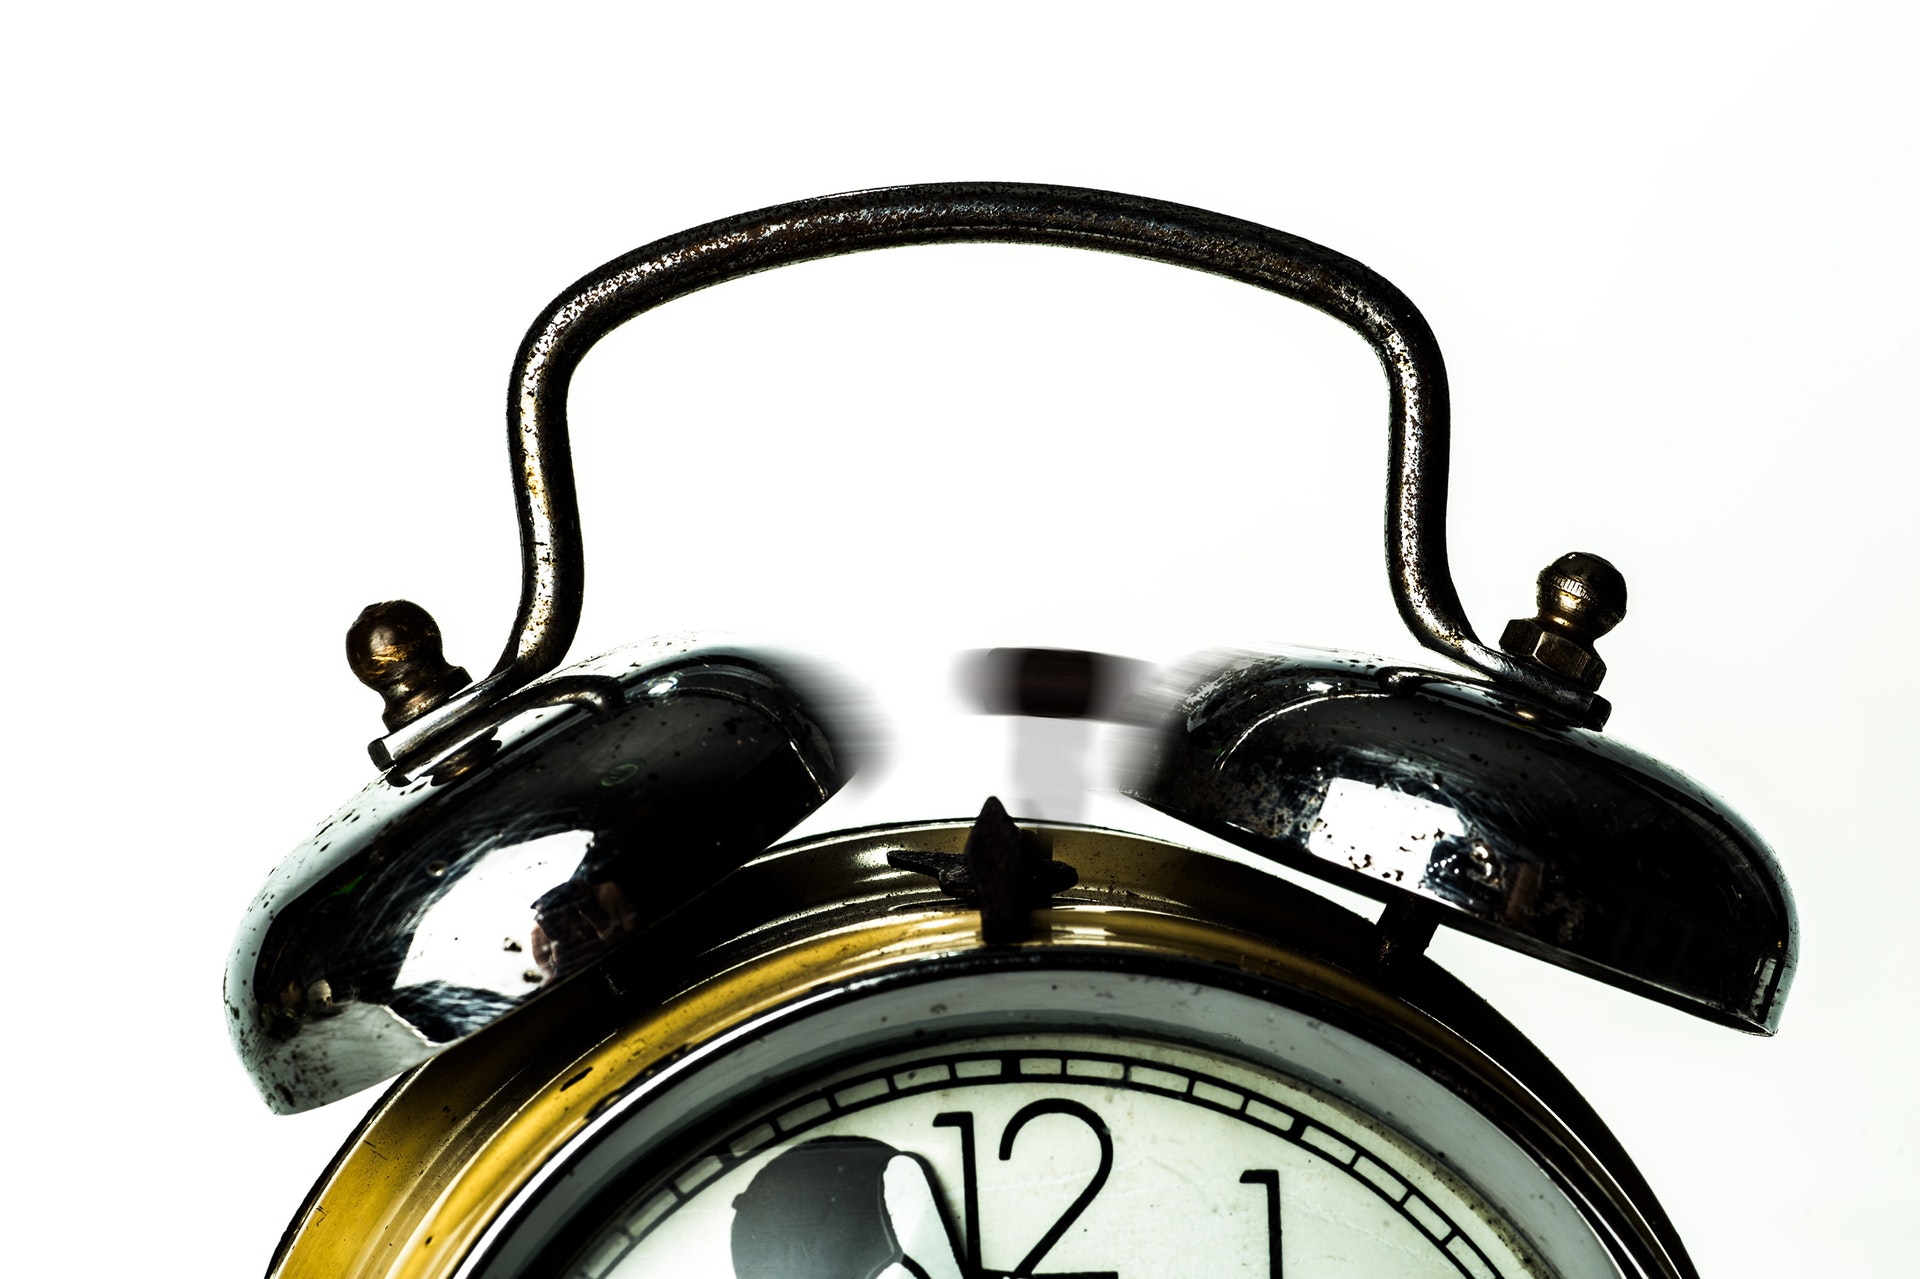 Close-up detail of an alarm clock